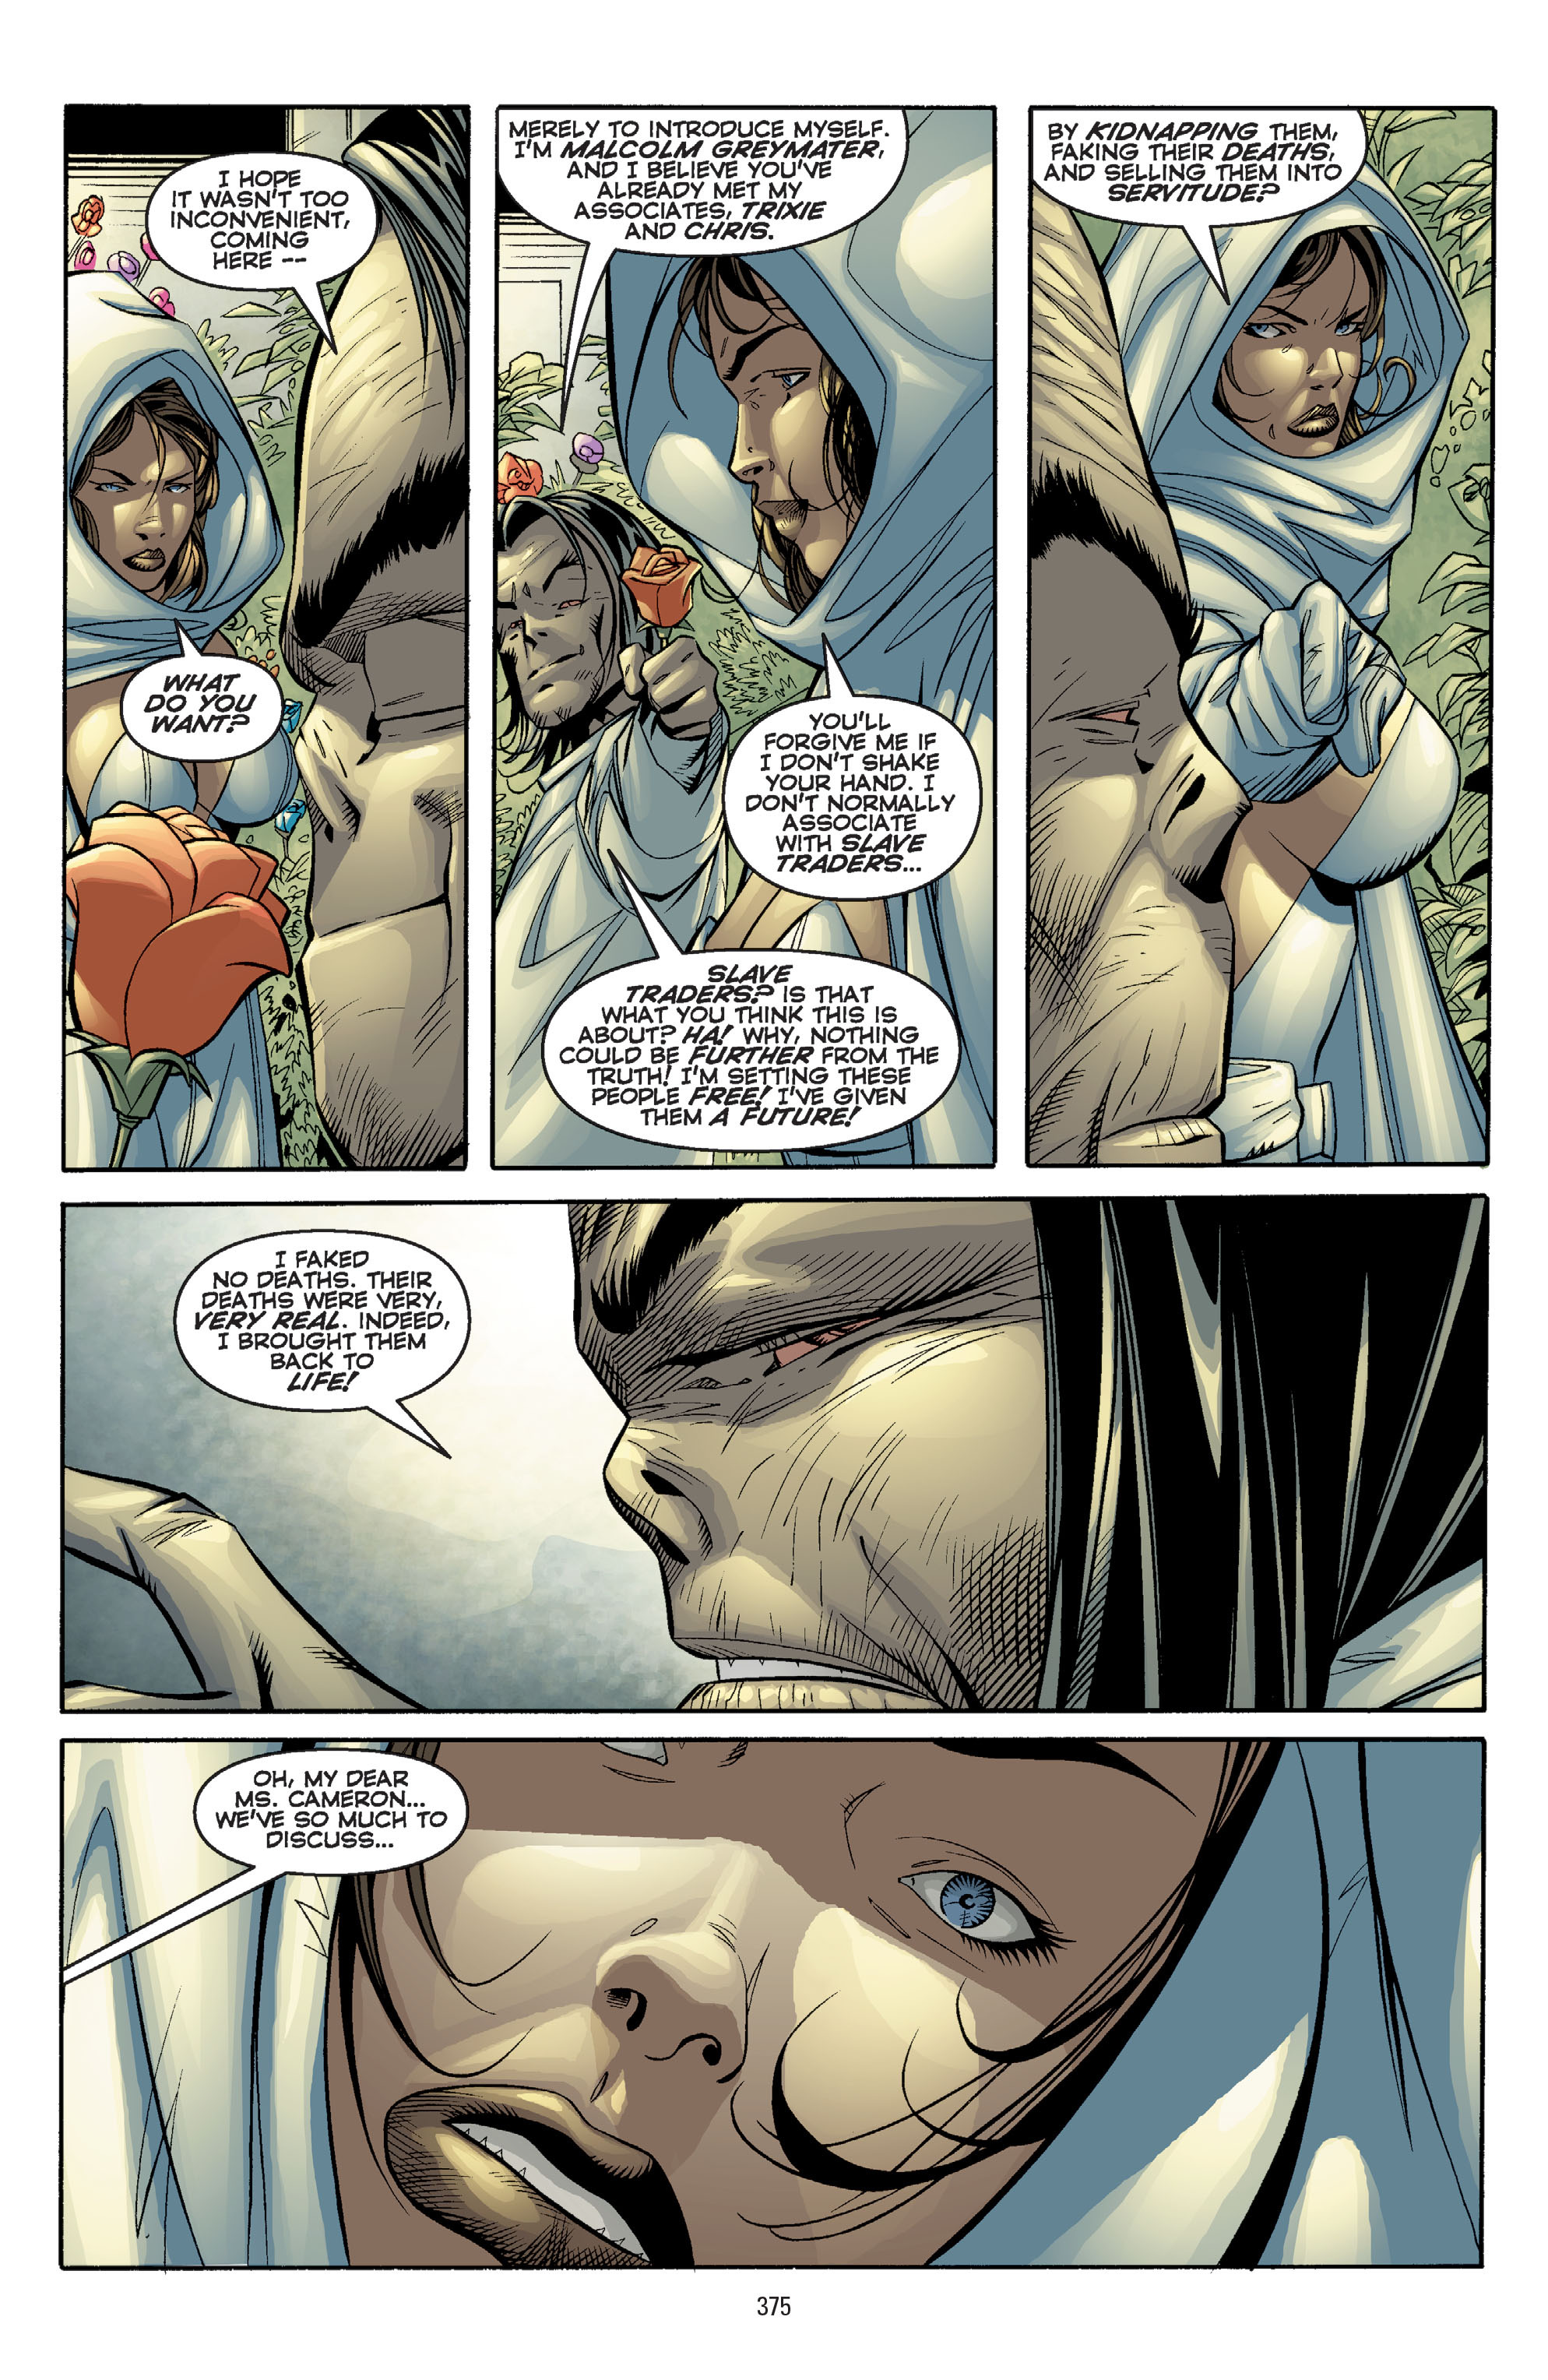 DC Comics/Dark Horse Comics: Justice League Full #1 - English 365